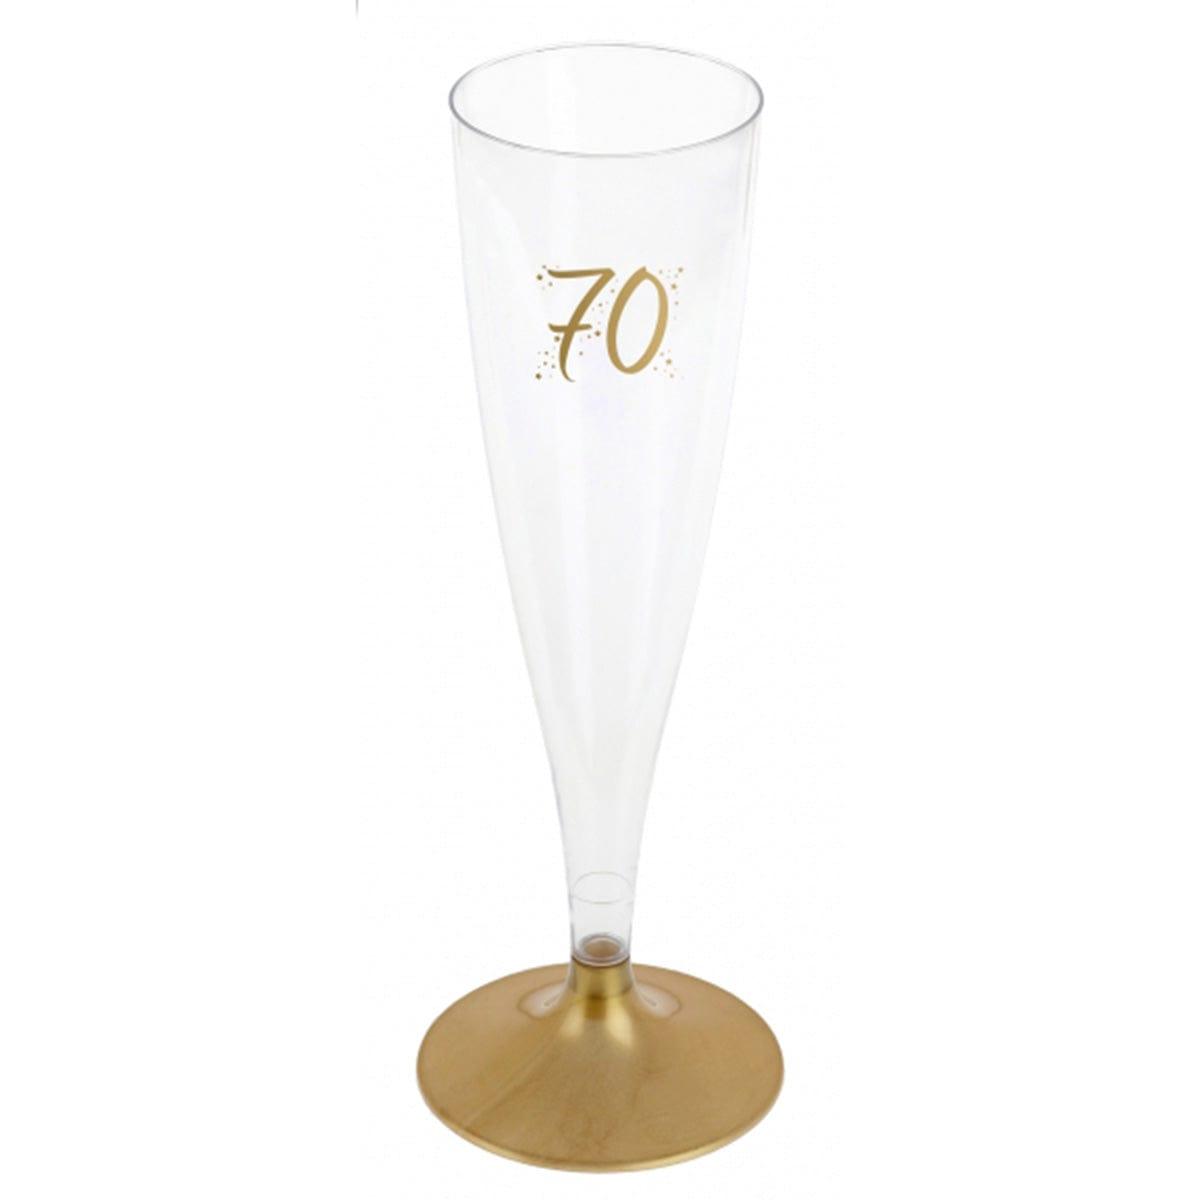 Flûte champagne 20 ans rose